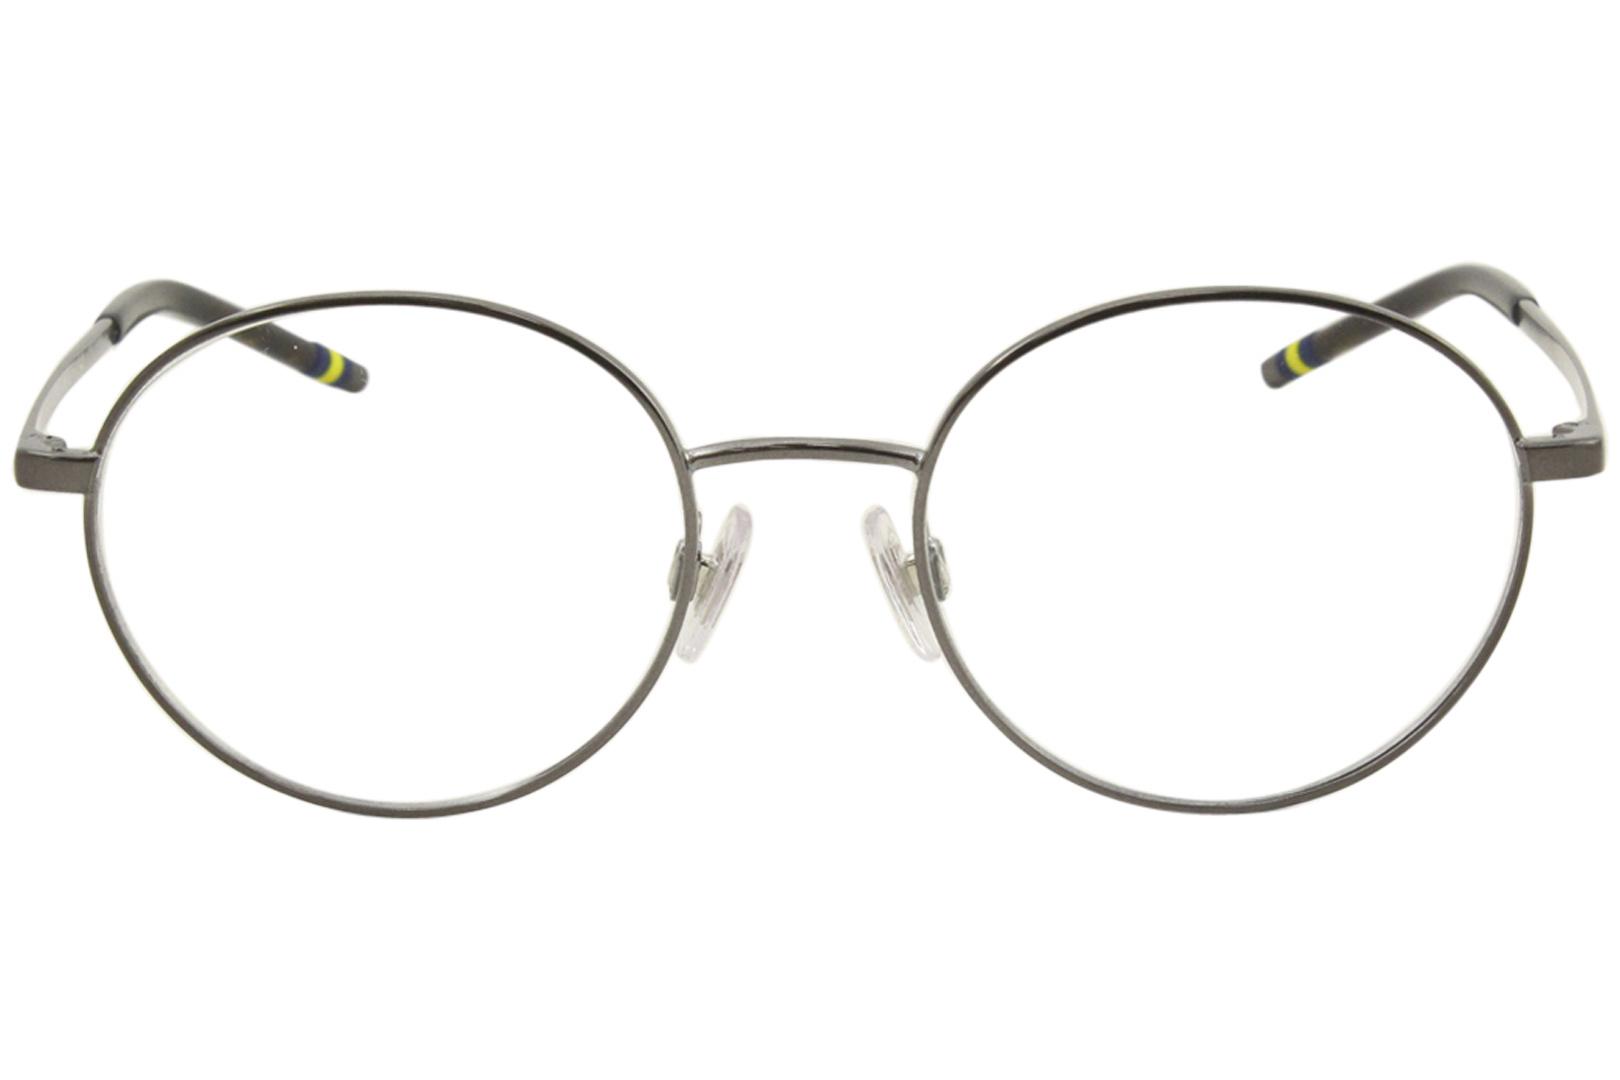 Polo Ralph Lauren Eyeglasses Frames Men's PH1193 9393 Havana On Shiny Pale Gold | JoyLot.com